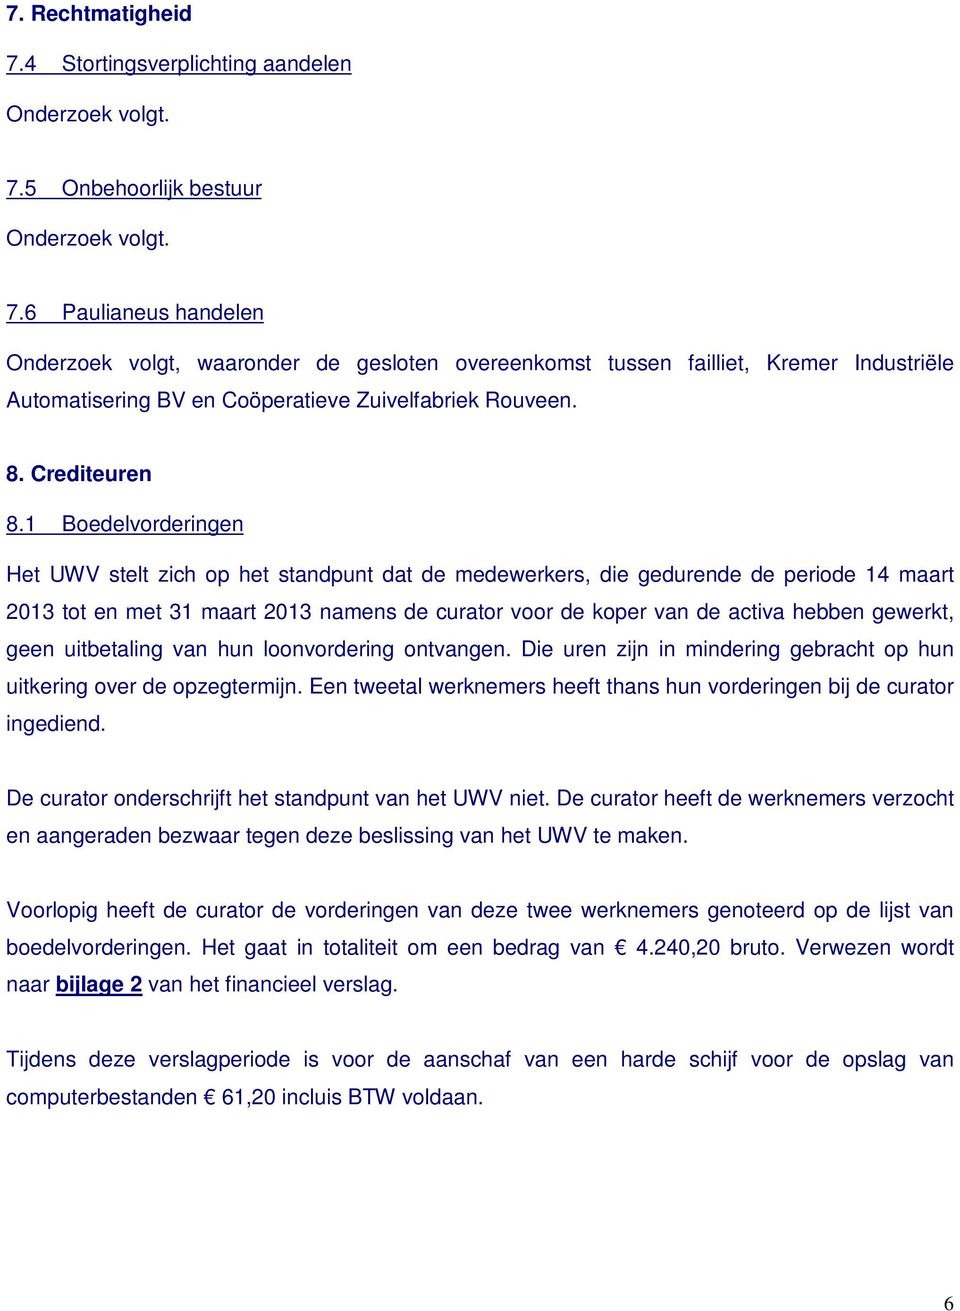 1 Boedelvorderingen Het UWV stelt zich op het standpunt dat de medewerkers, die gedurende de periode 14 maart 2013 tot en met 31 maart 2013 namens de curator voor de koper van de activa hebben